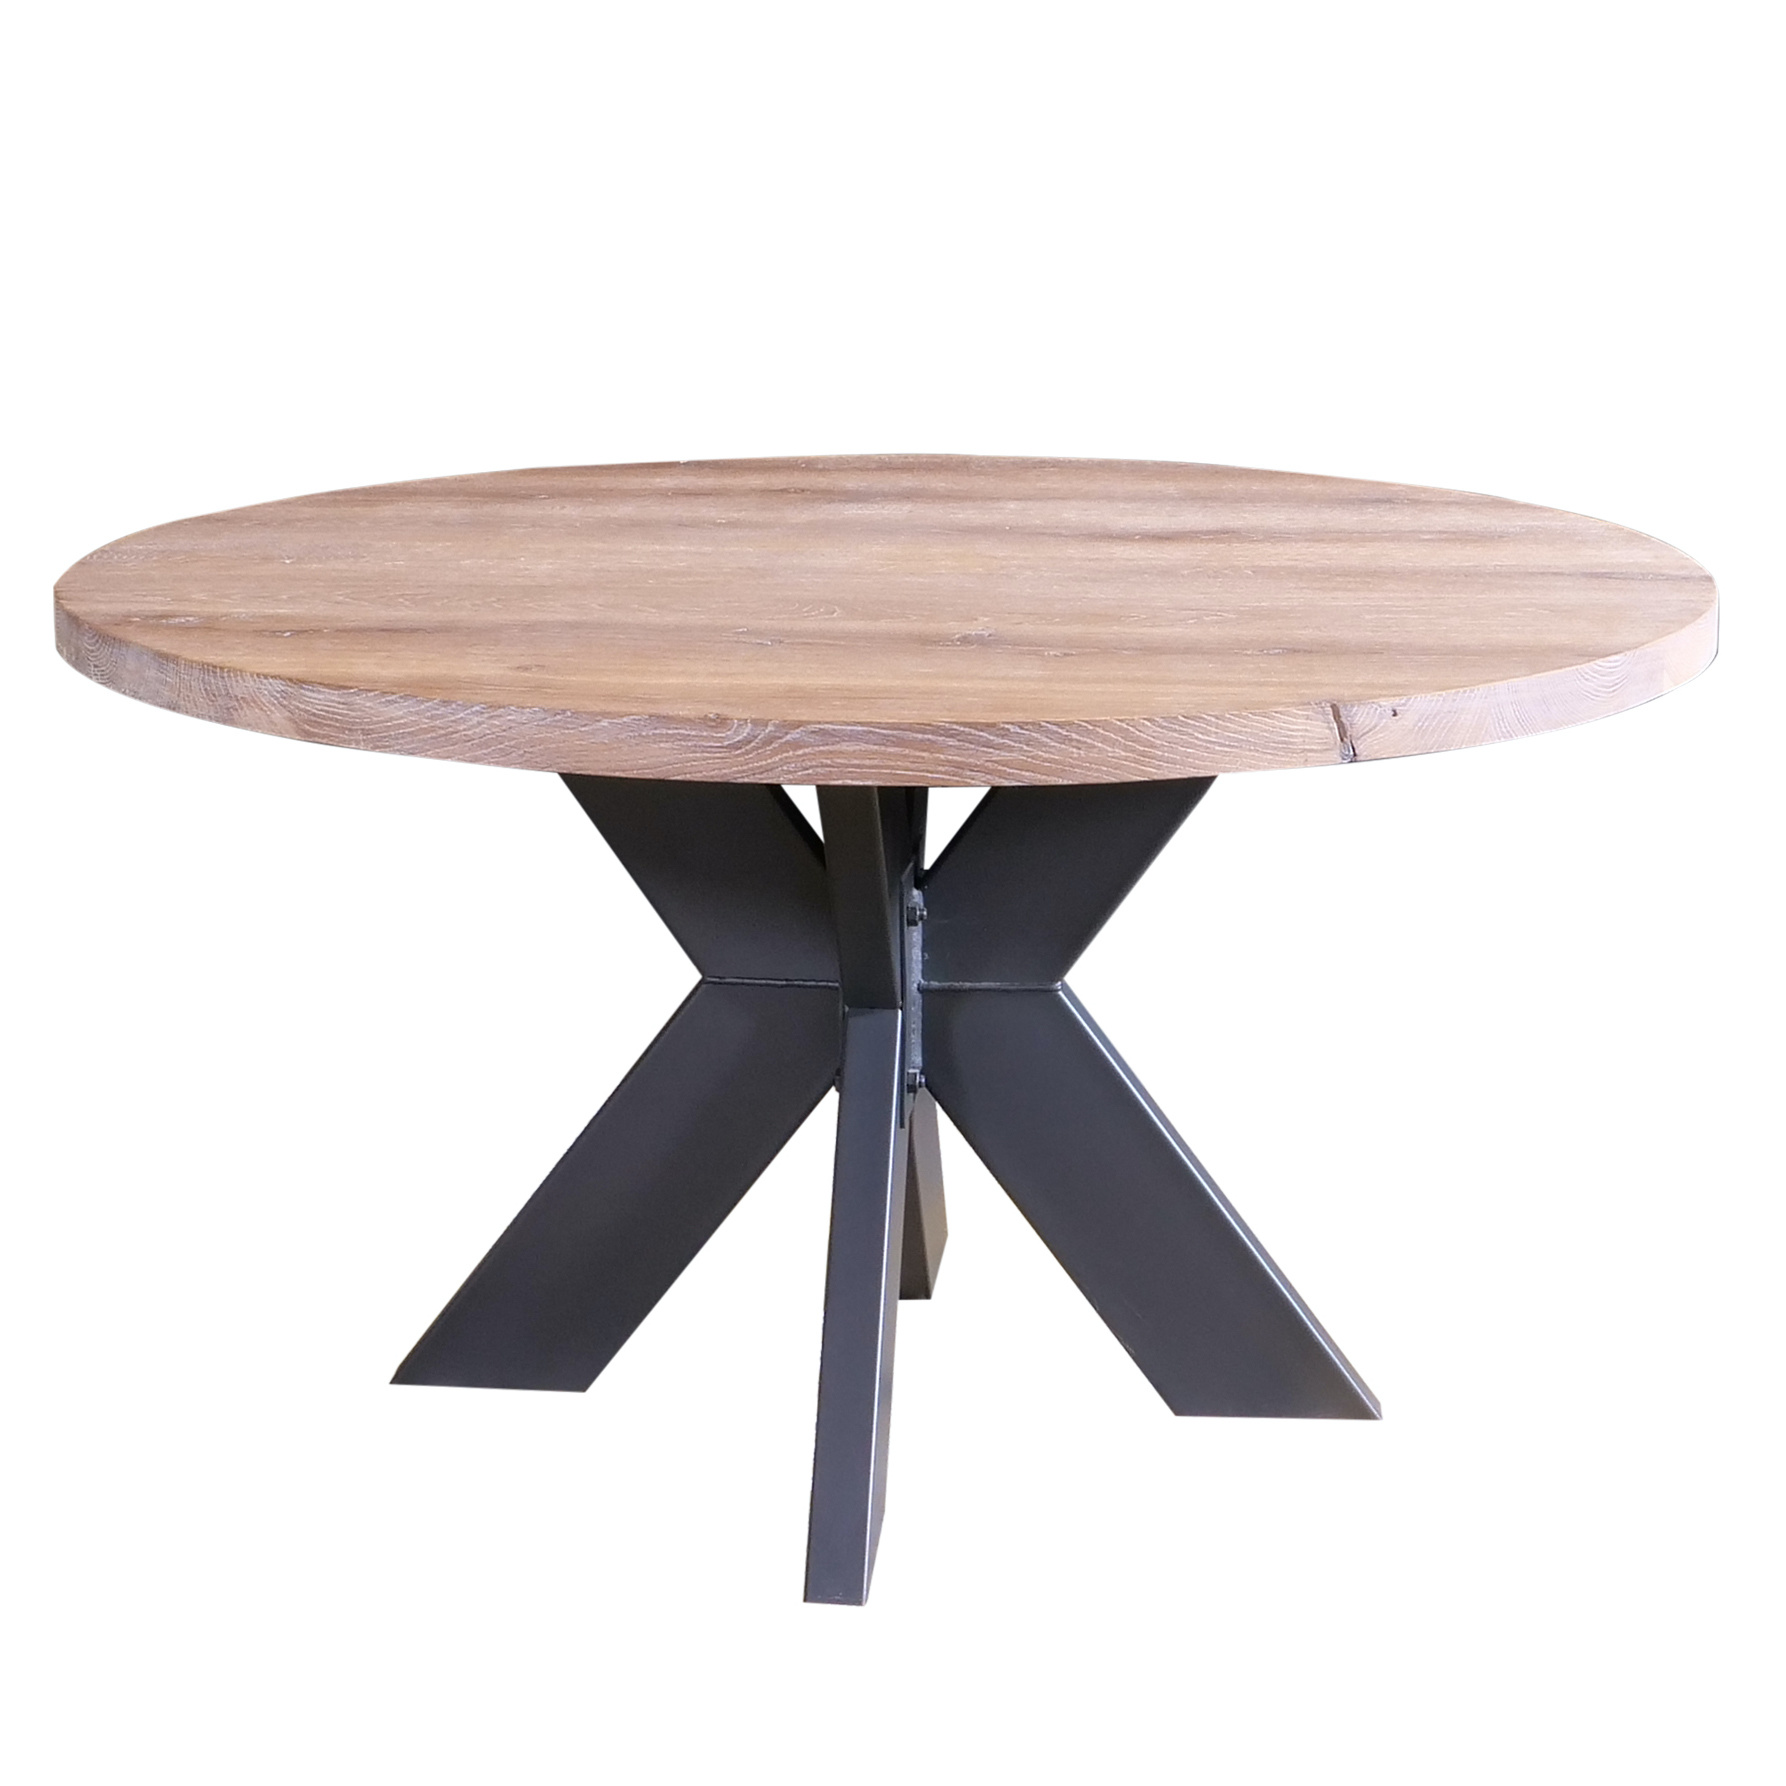  Eiken tafelblad rond - 4 cm dik (1-laag) - Diverse afmetingen - optioneel geborsteld - Rustiek Europees eikenhout - verlijmd kd 10-12%